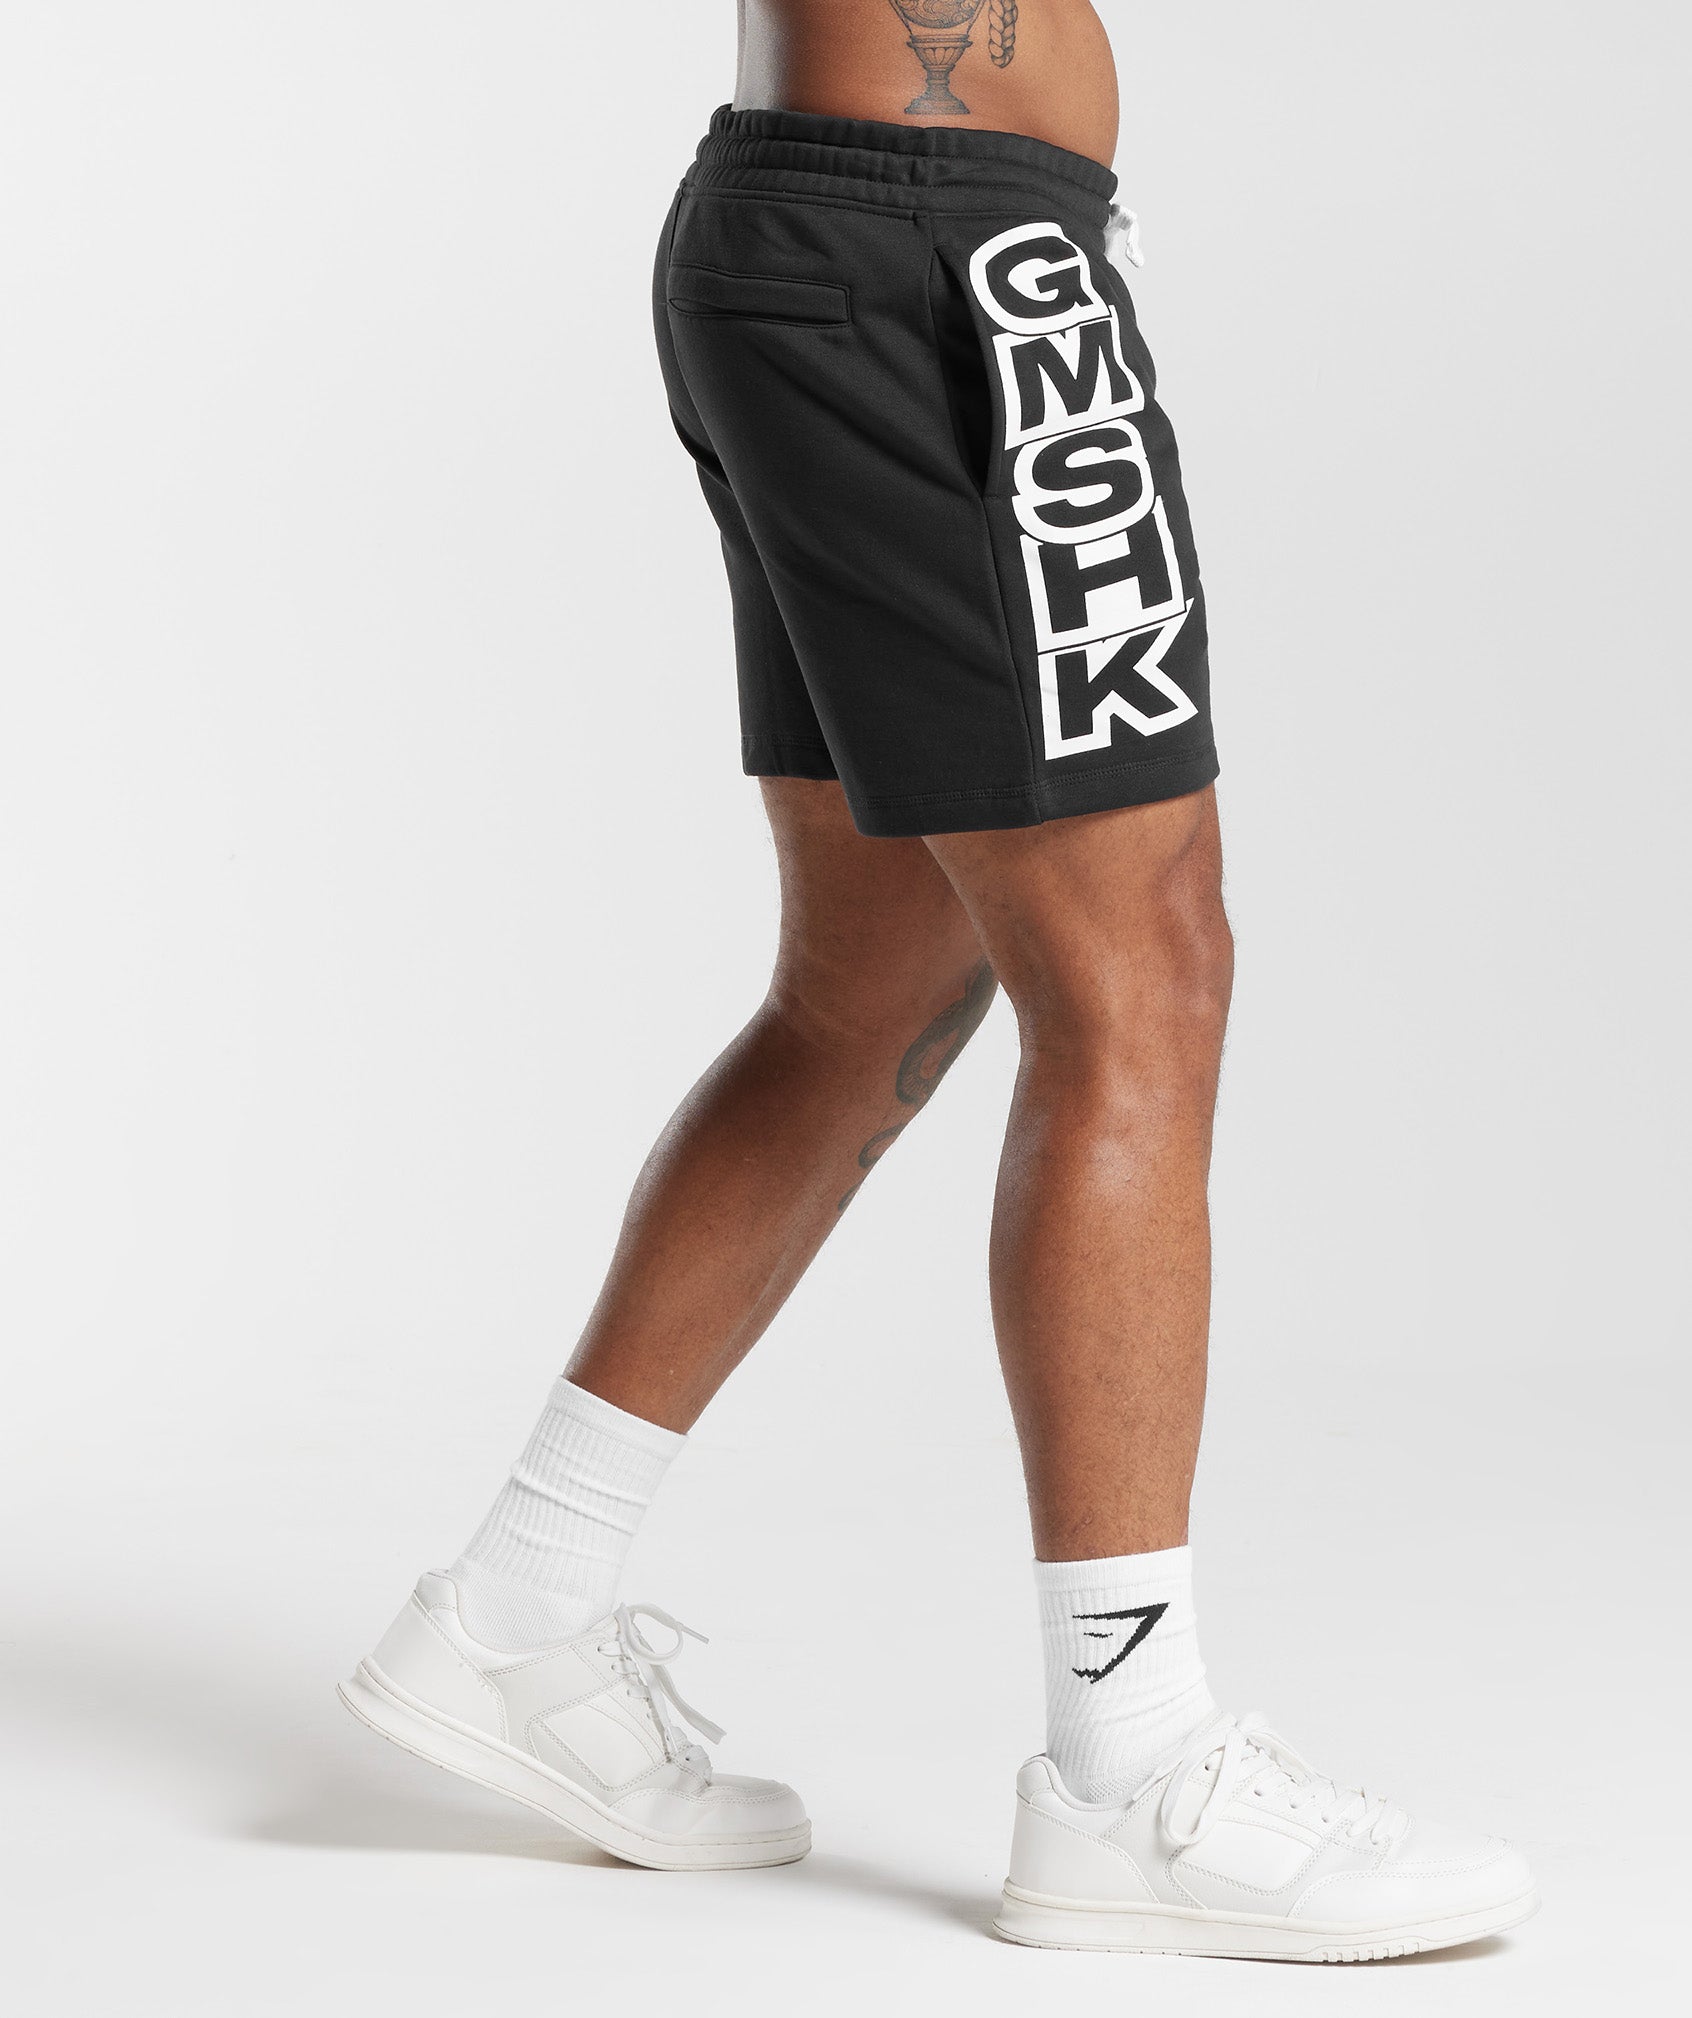 GMSHK Shorts in Black